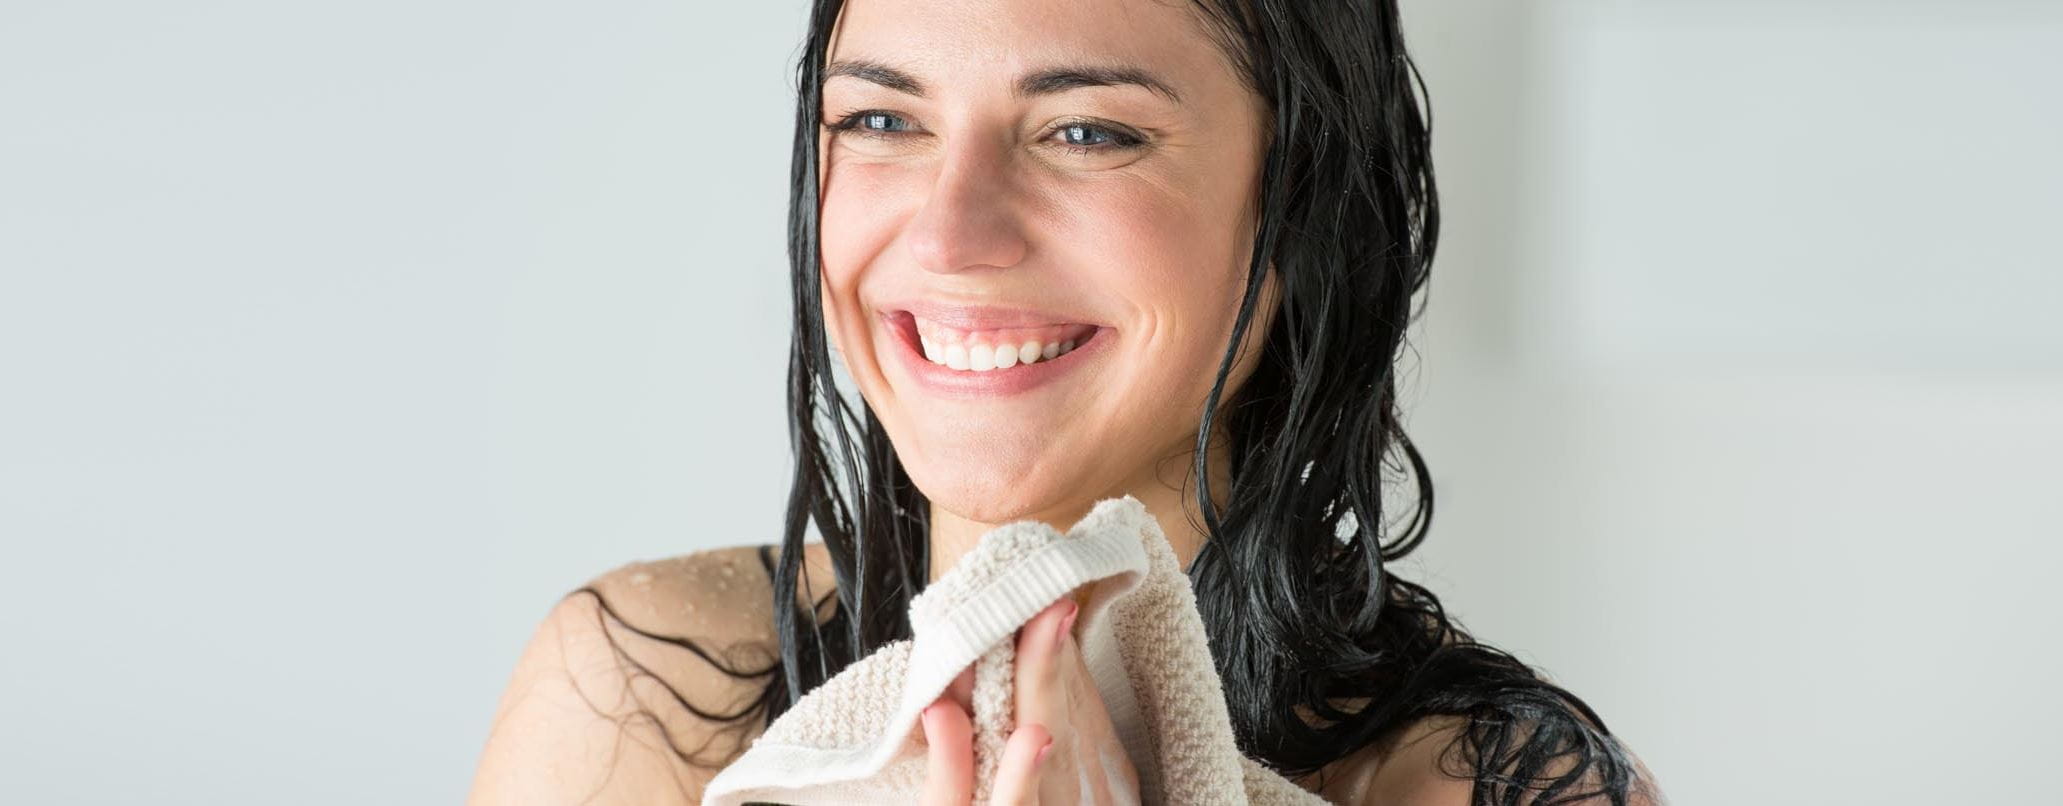 Welches ist das beste Duschgel für Ihre Haut?